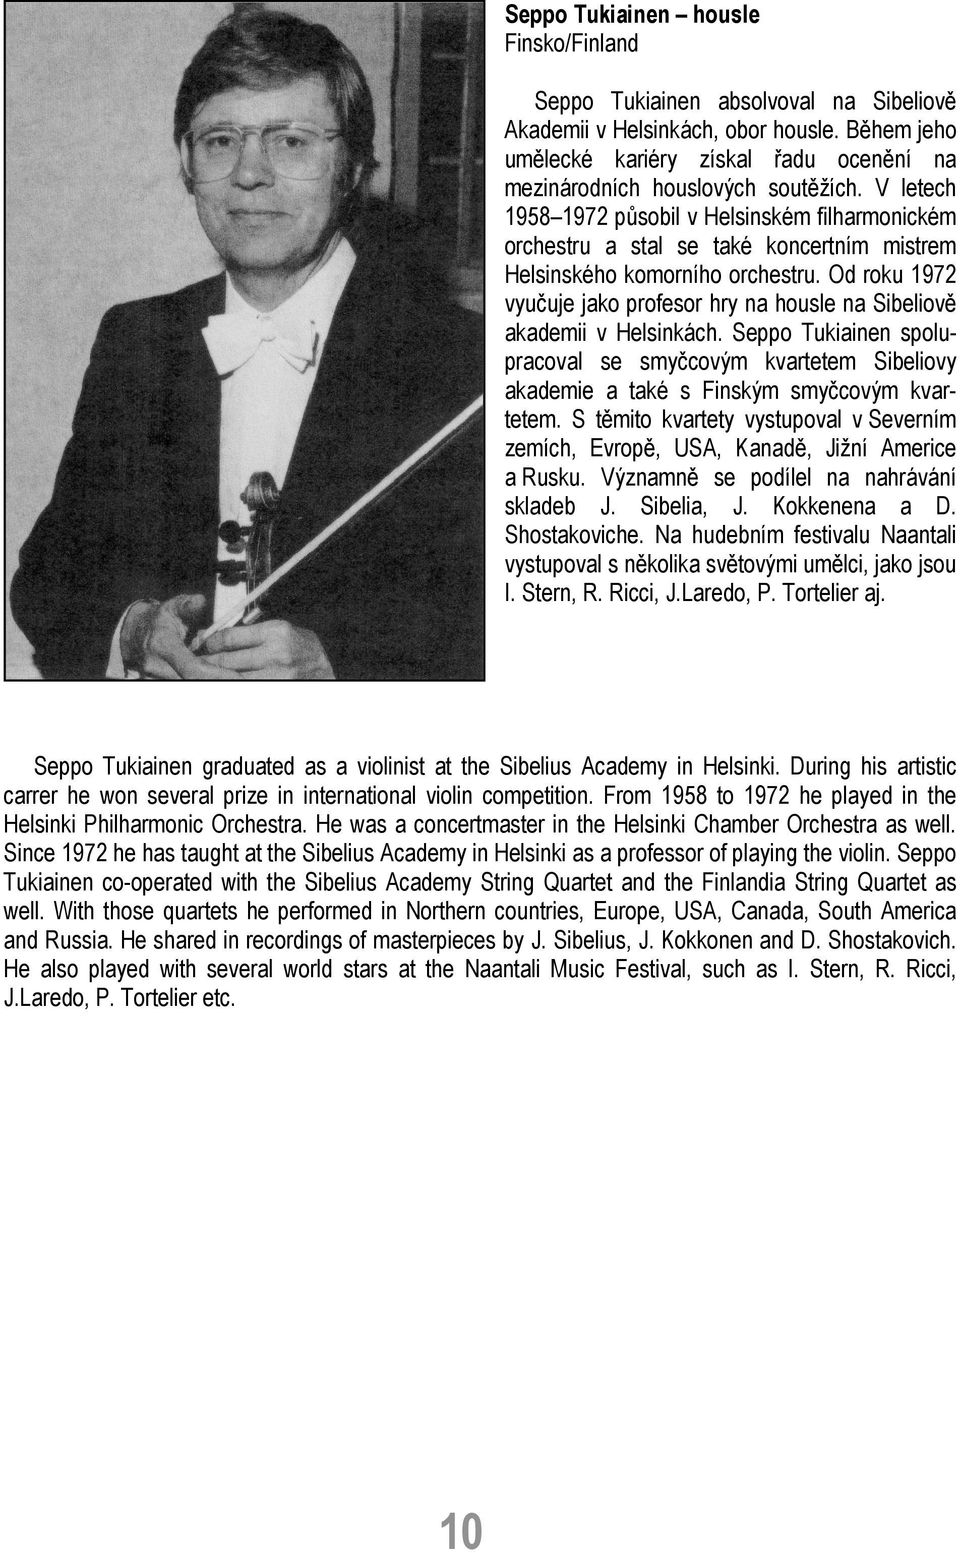 Od roku 1972 vyučuje jako profesor hry na housle na Sibeliově akademii v Helsinkách. Seppo Tukiainen spolupracoval se smyčcovým kvartetem Sibeliovy akademie a také s Finským smyčcovým kvartetem.